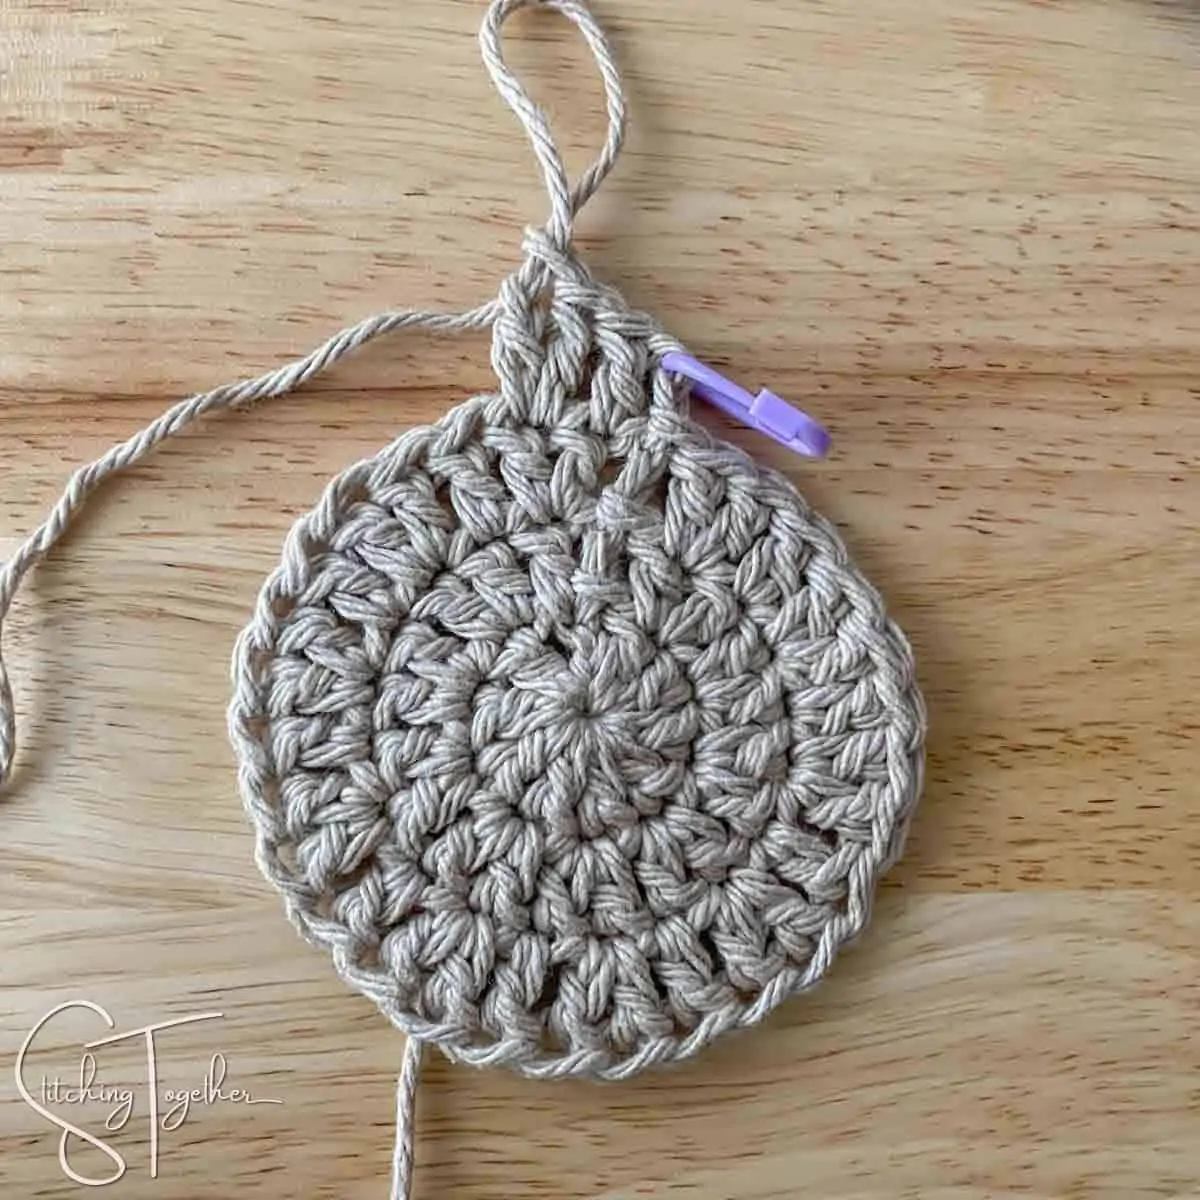 starting round 4 of crochet circle